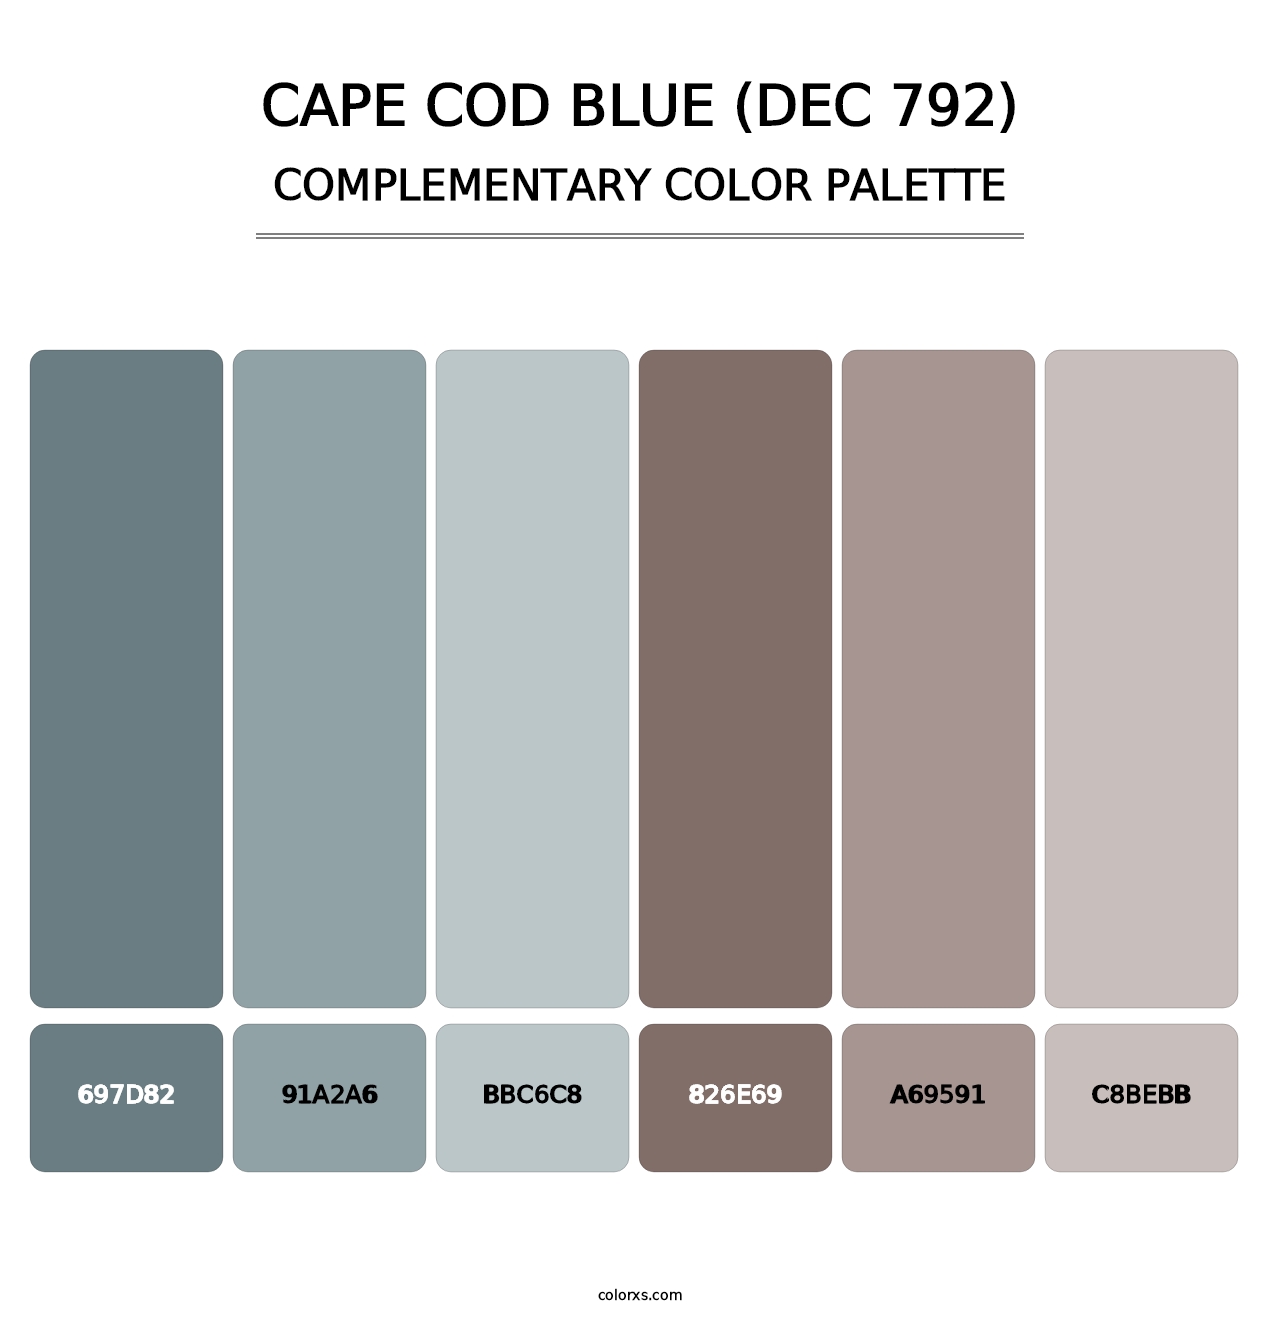 Cape Cod Blue (DEC 792) - Complementary Color Palette